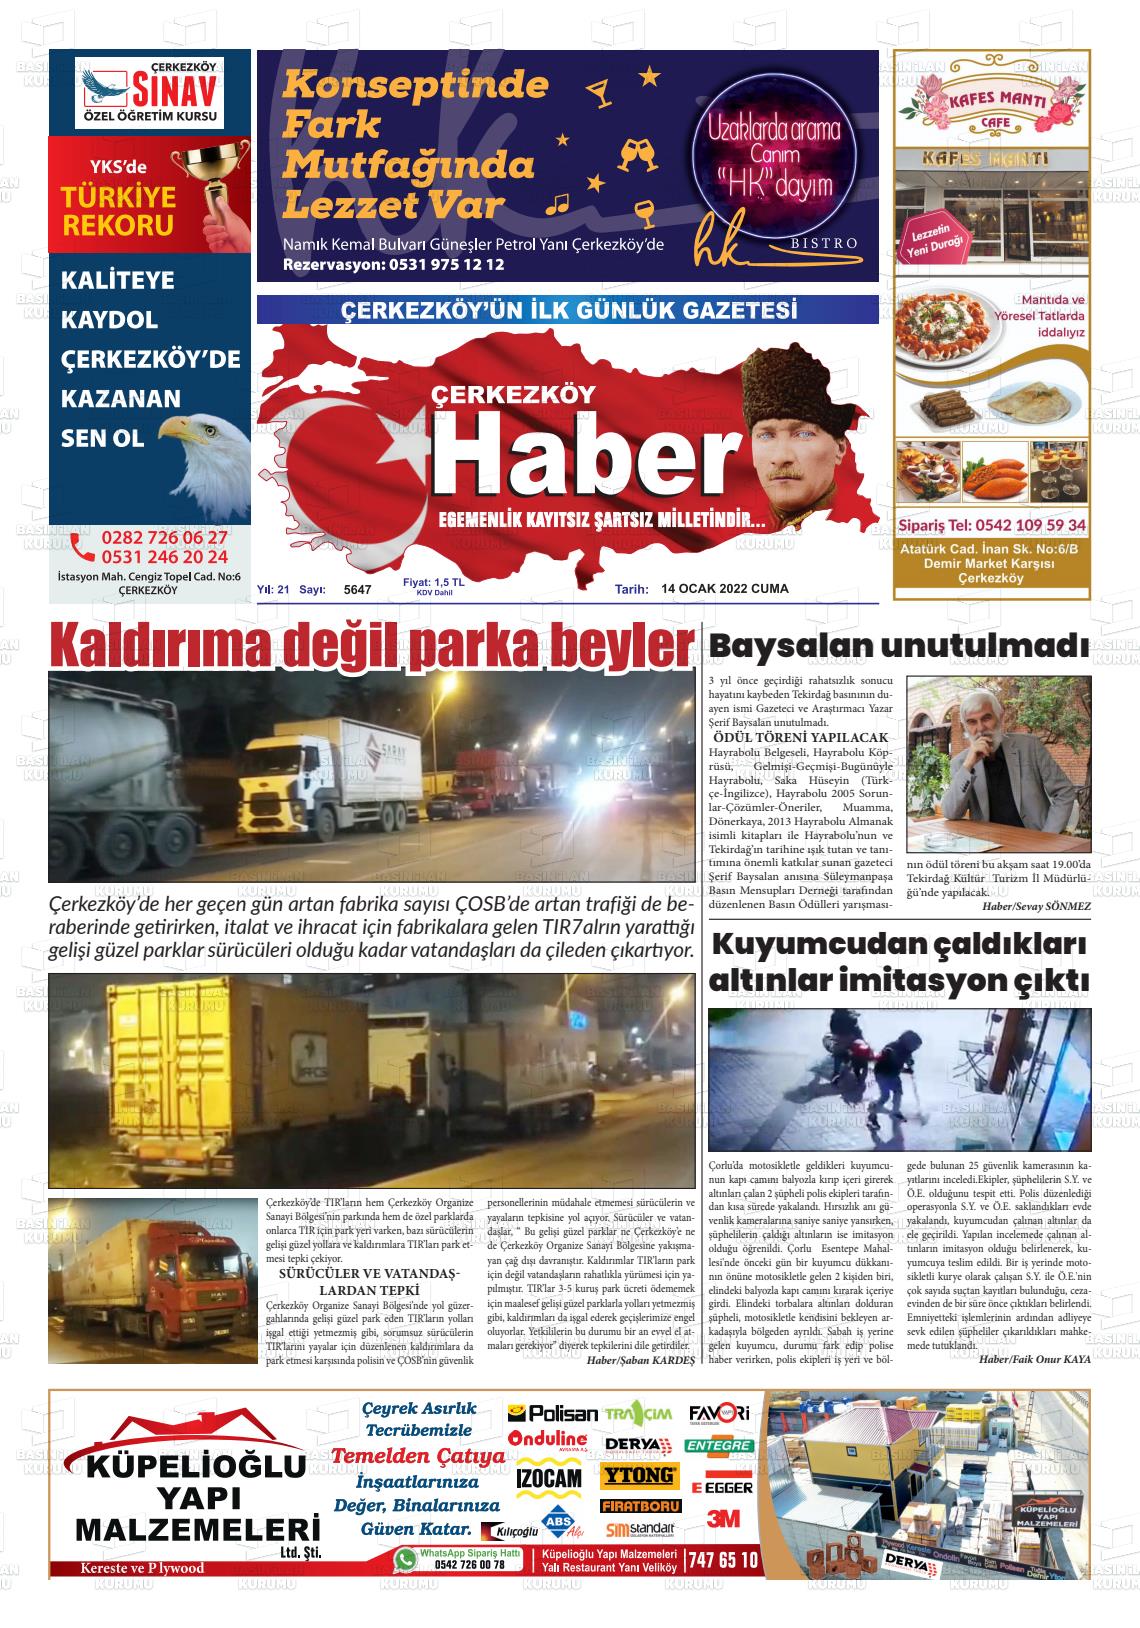 14 Ocak 2022 Çerkezköy Haber Gazete Manşeti